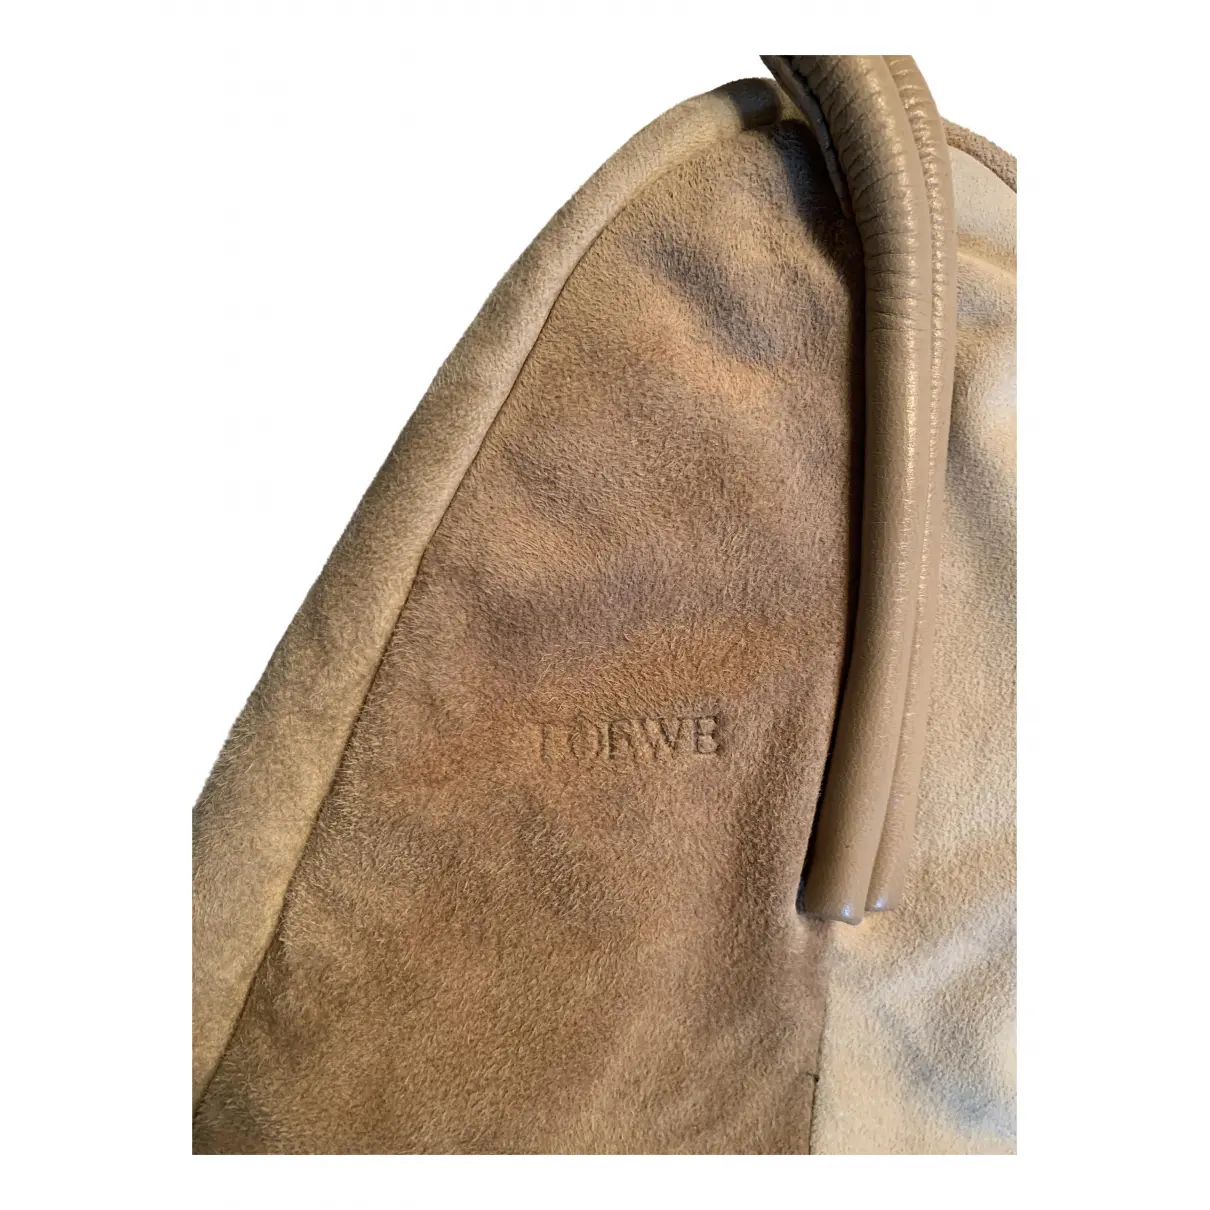 Buy Loewe Handbag online - Vintage